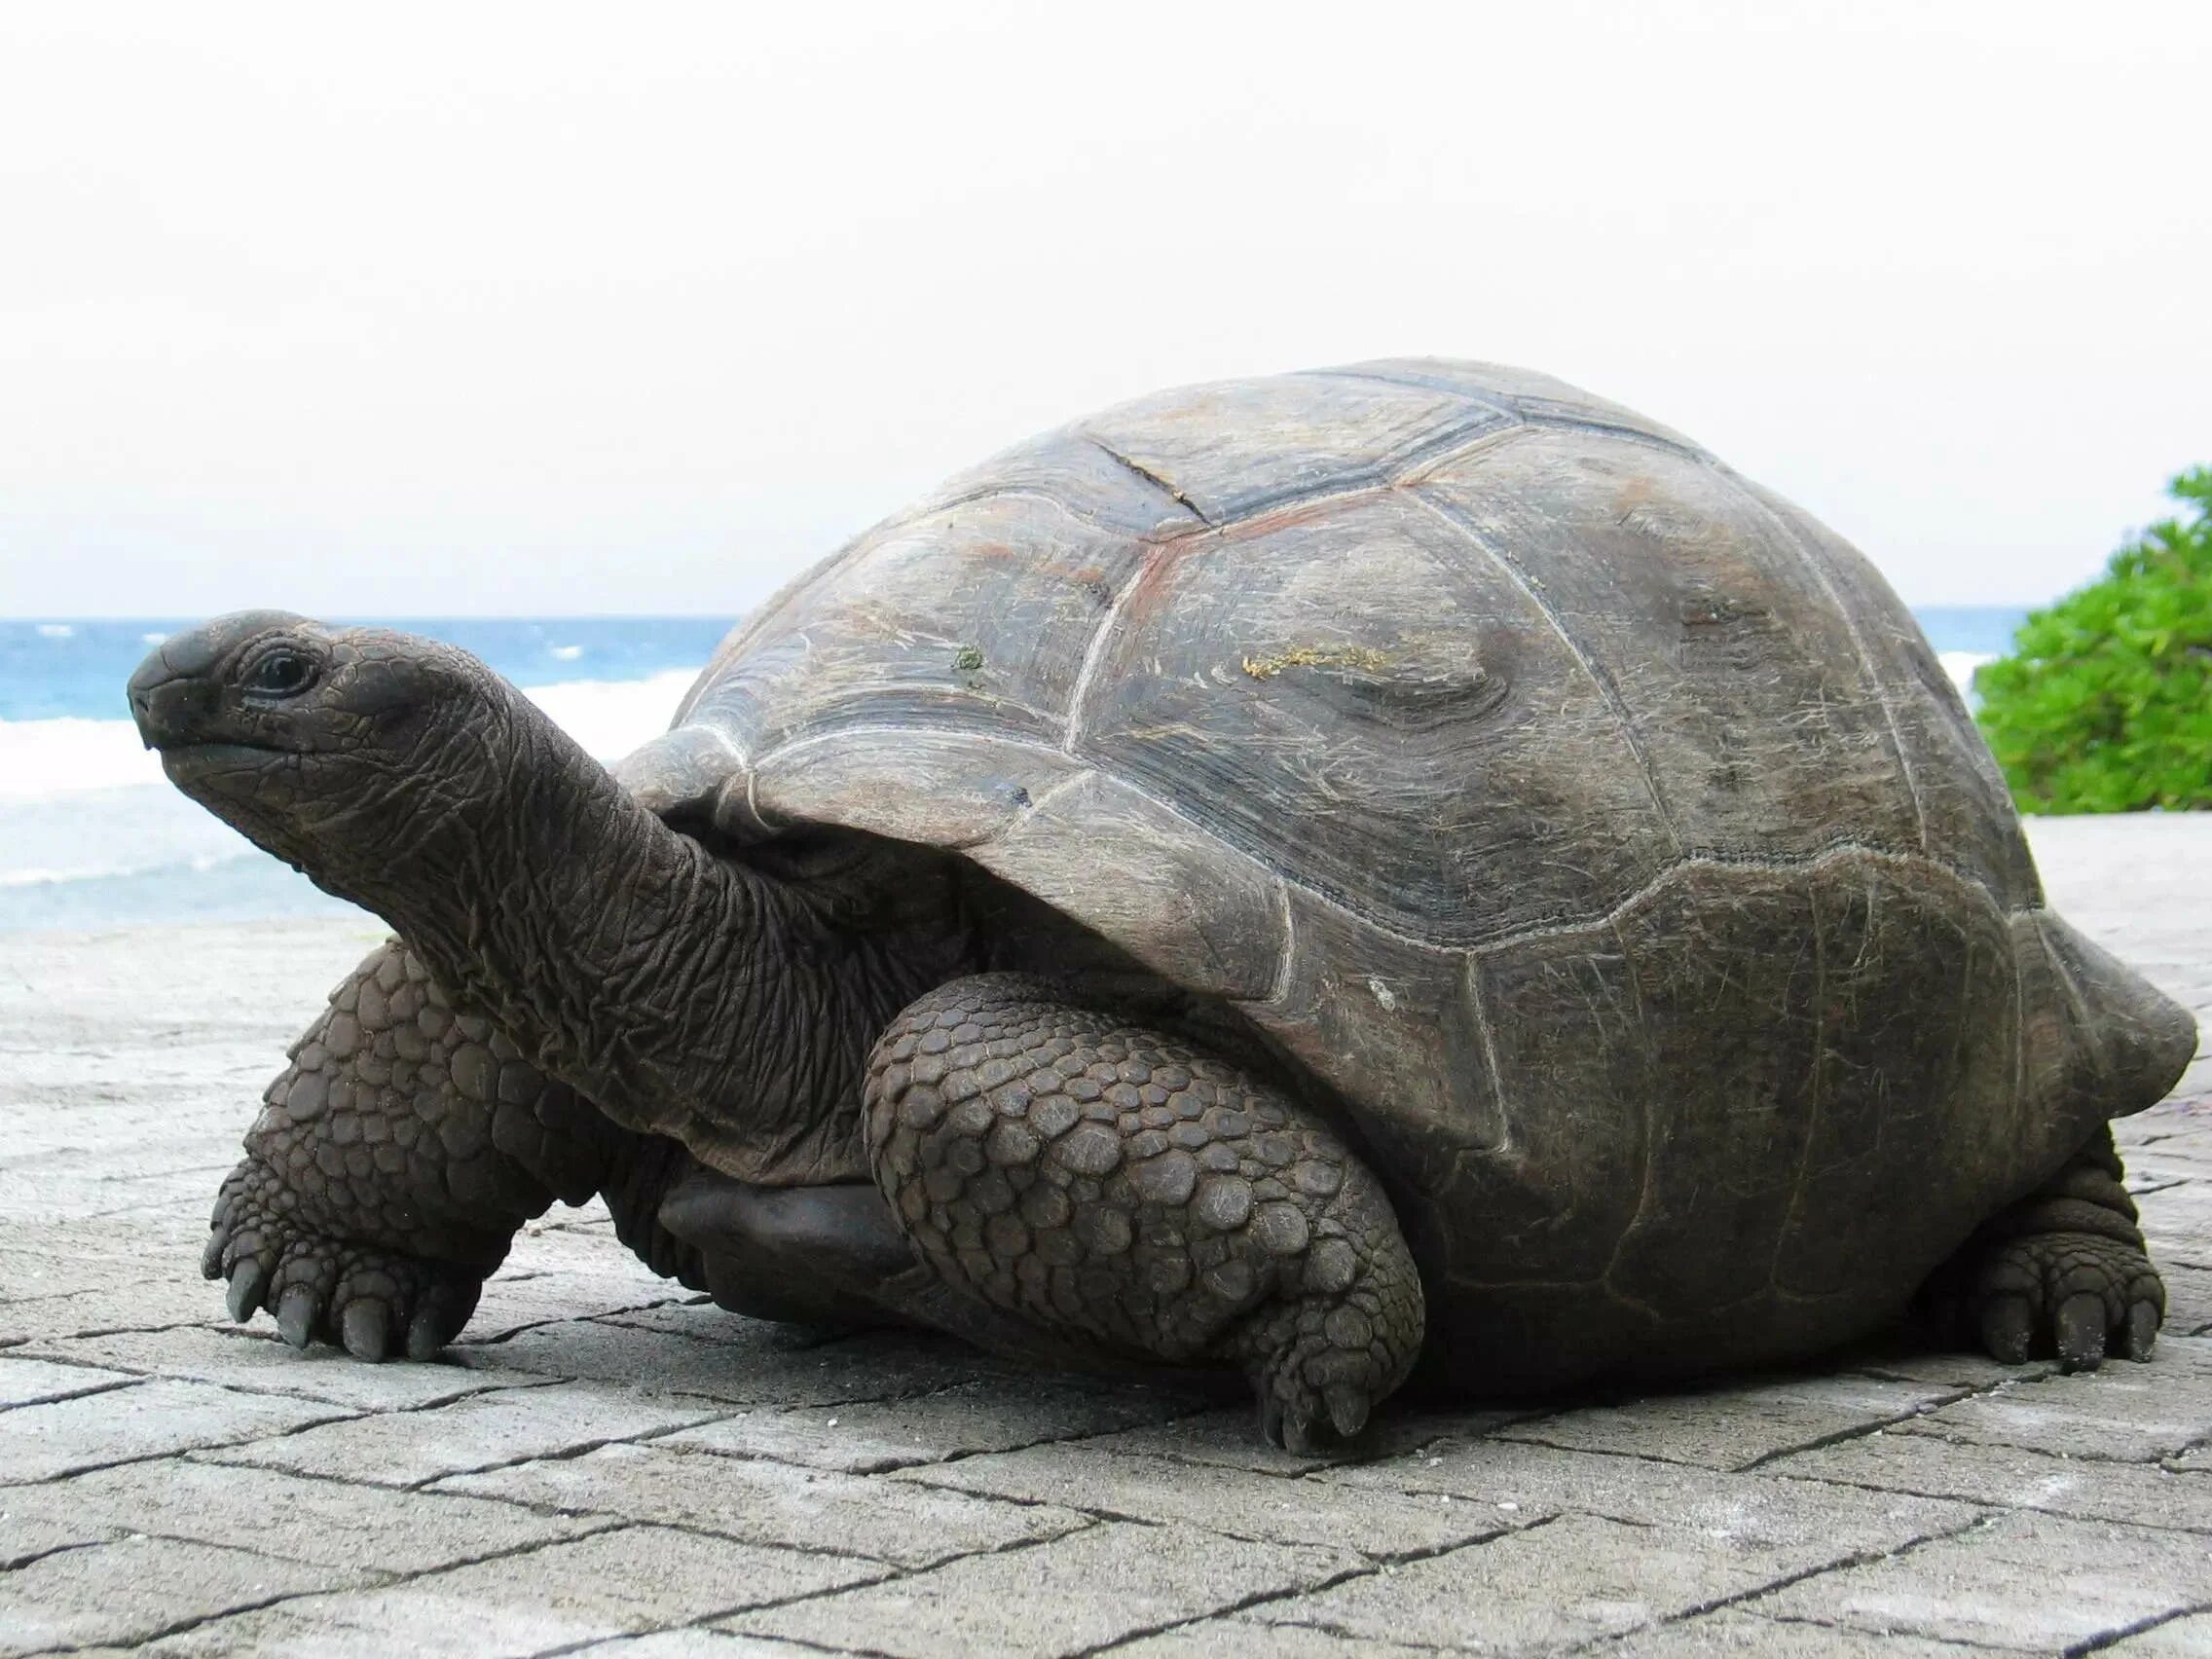 Гигантская черепаха Альдабра. Дермохелис черепаха. Галапагосская черепаха. Галапагосская гигантская черепаха. Купить большую картинку